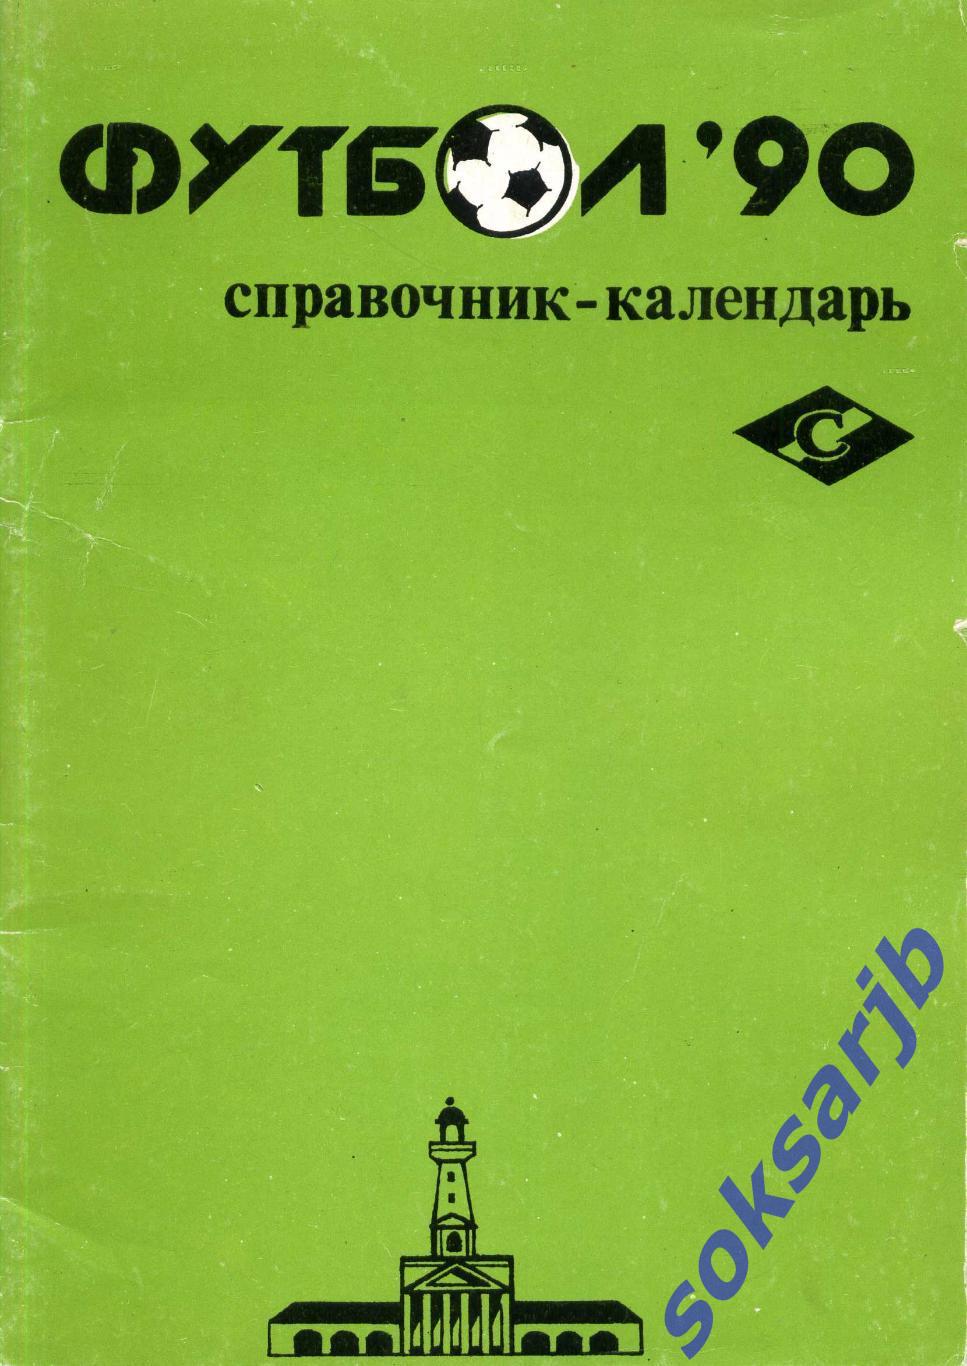 1990. Кострома. Календарь-справочник.